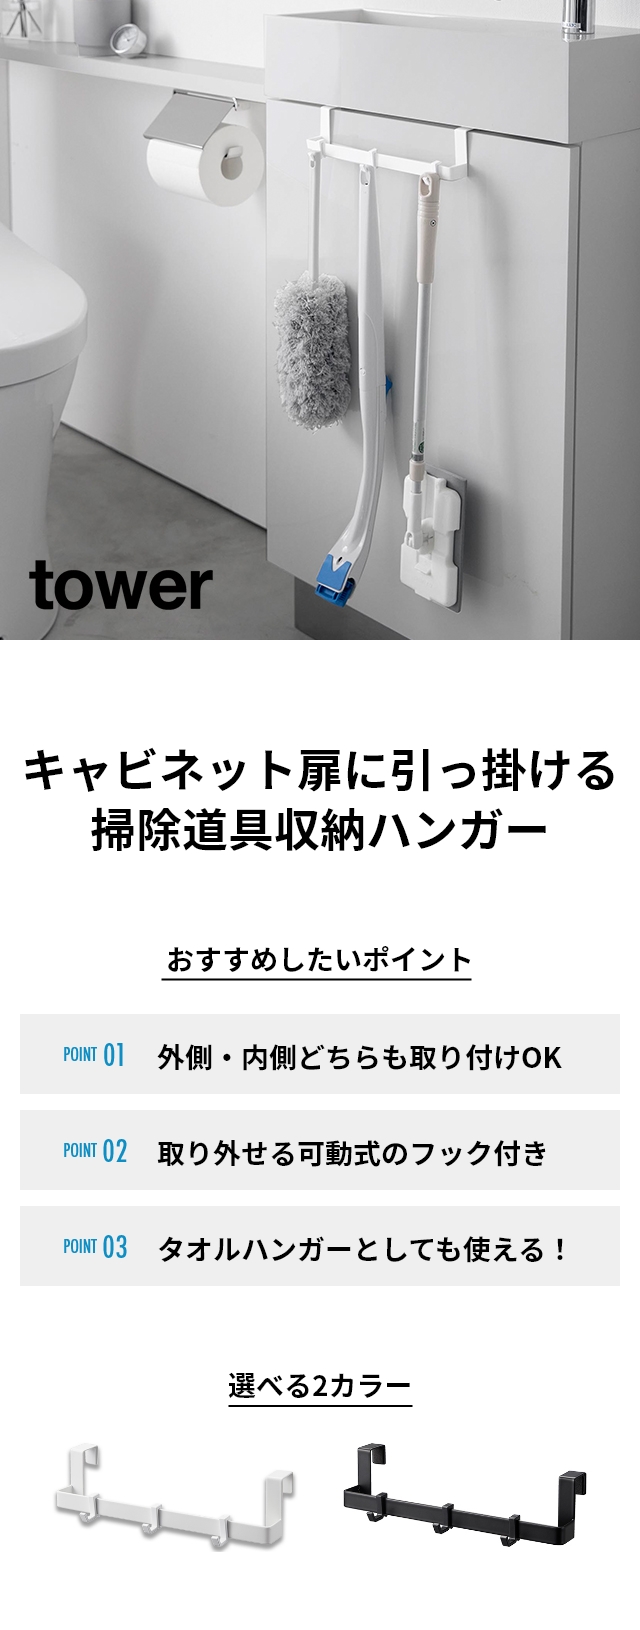 tower(タワー) トイレキャビネット扉ハンガー